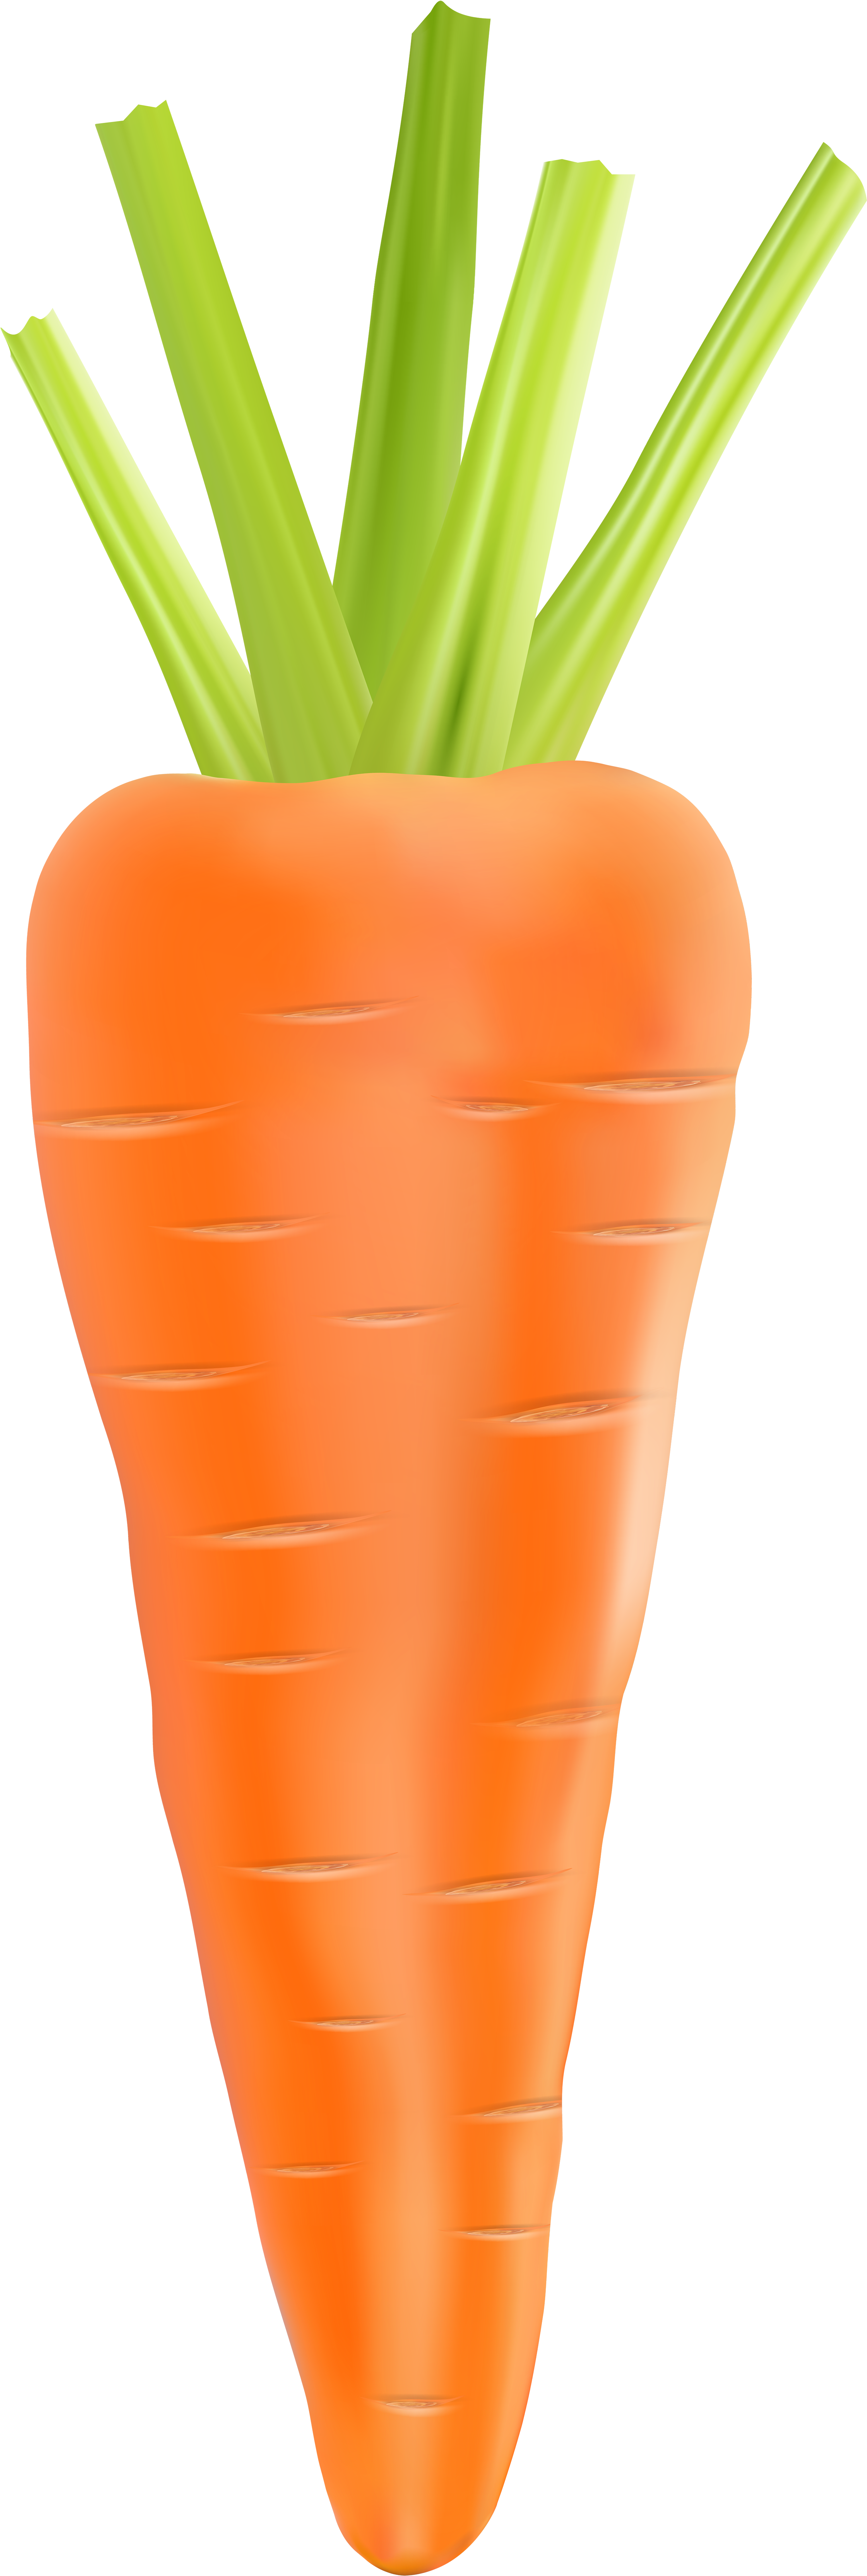 Carrot Clip Art - Carrot (2753x8000)